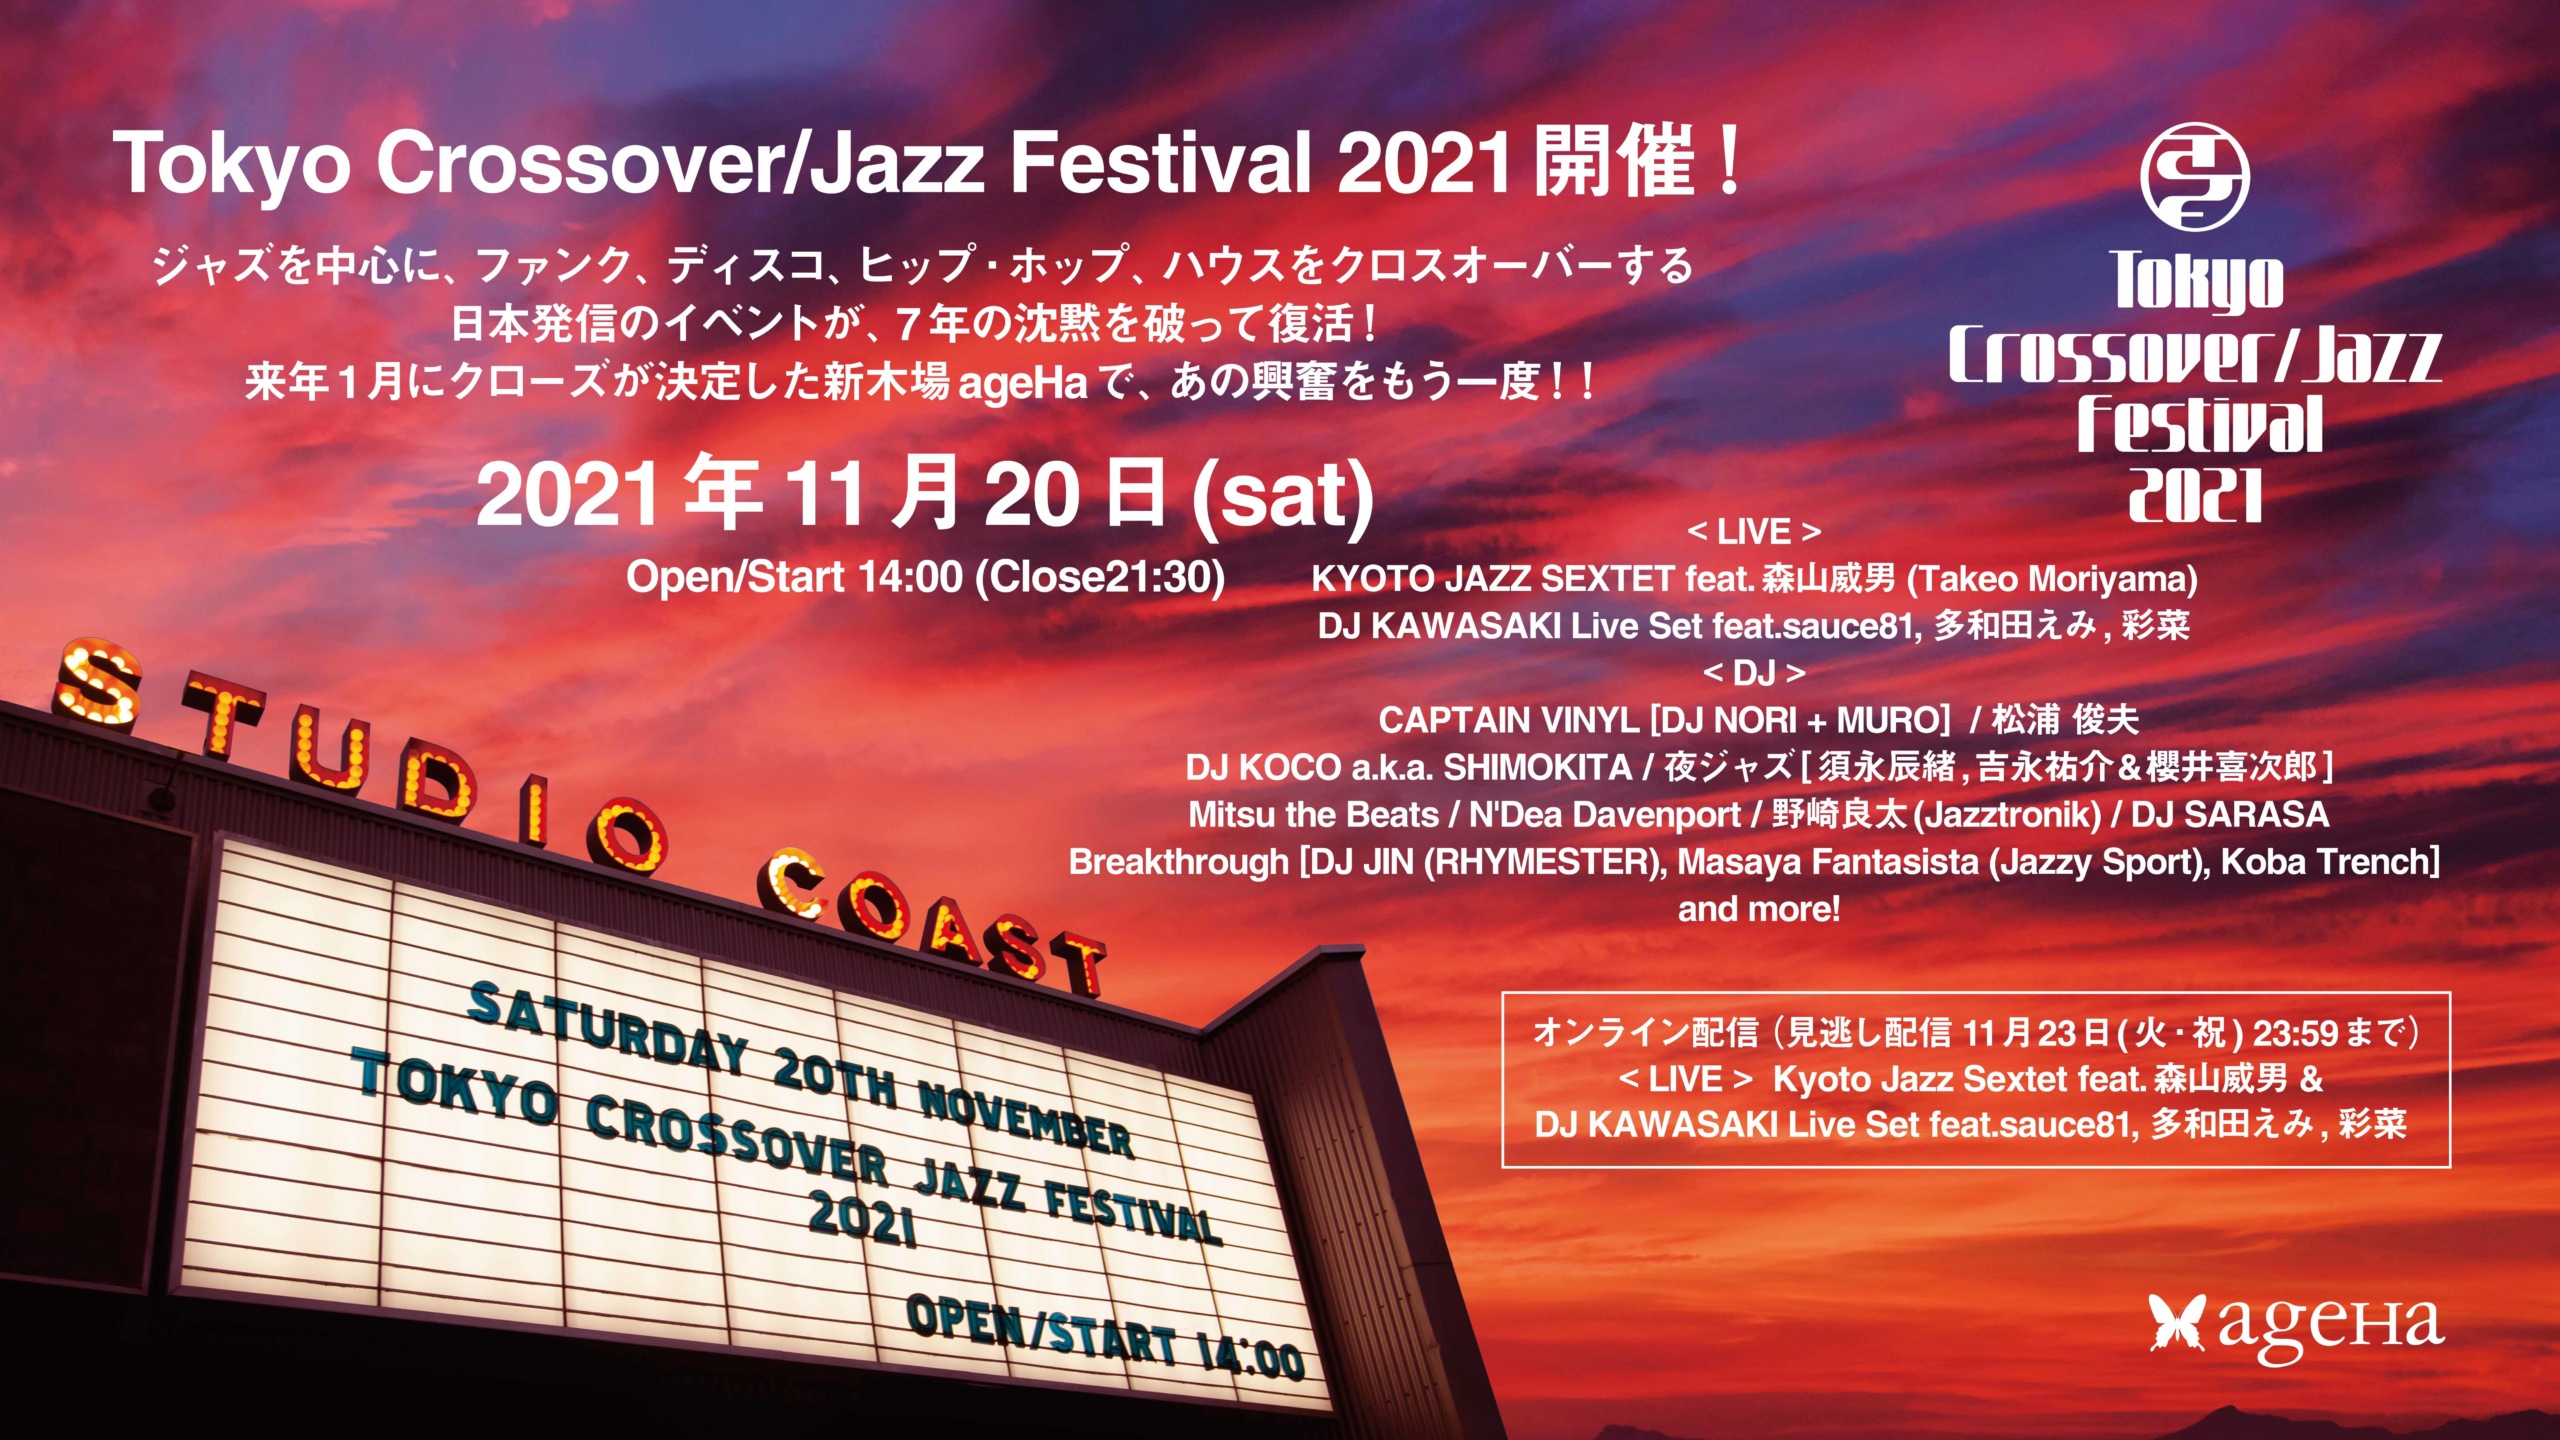 Tokyo Crossover/Jazz Festival 2021、
11月20日(土)新木場ageHaにて開催！
ジャズを中心に、ファンク、ディスコ、ヒップ・ホップ、ハウスを
クロスオーバーする日本発信のイベントが、
7年の沈黙を破って復活！来年1月にクローズが決定した
新木場ageHaで、あの興奮をもう一度！！